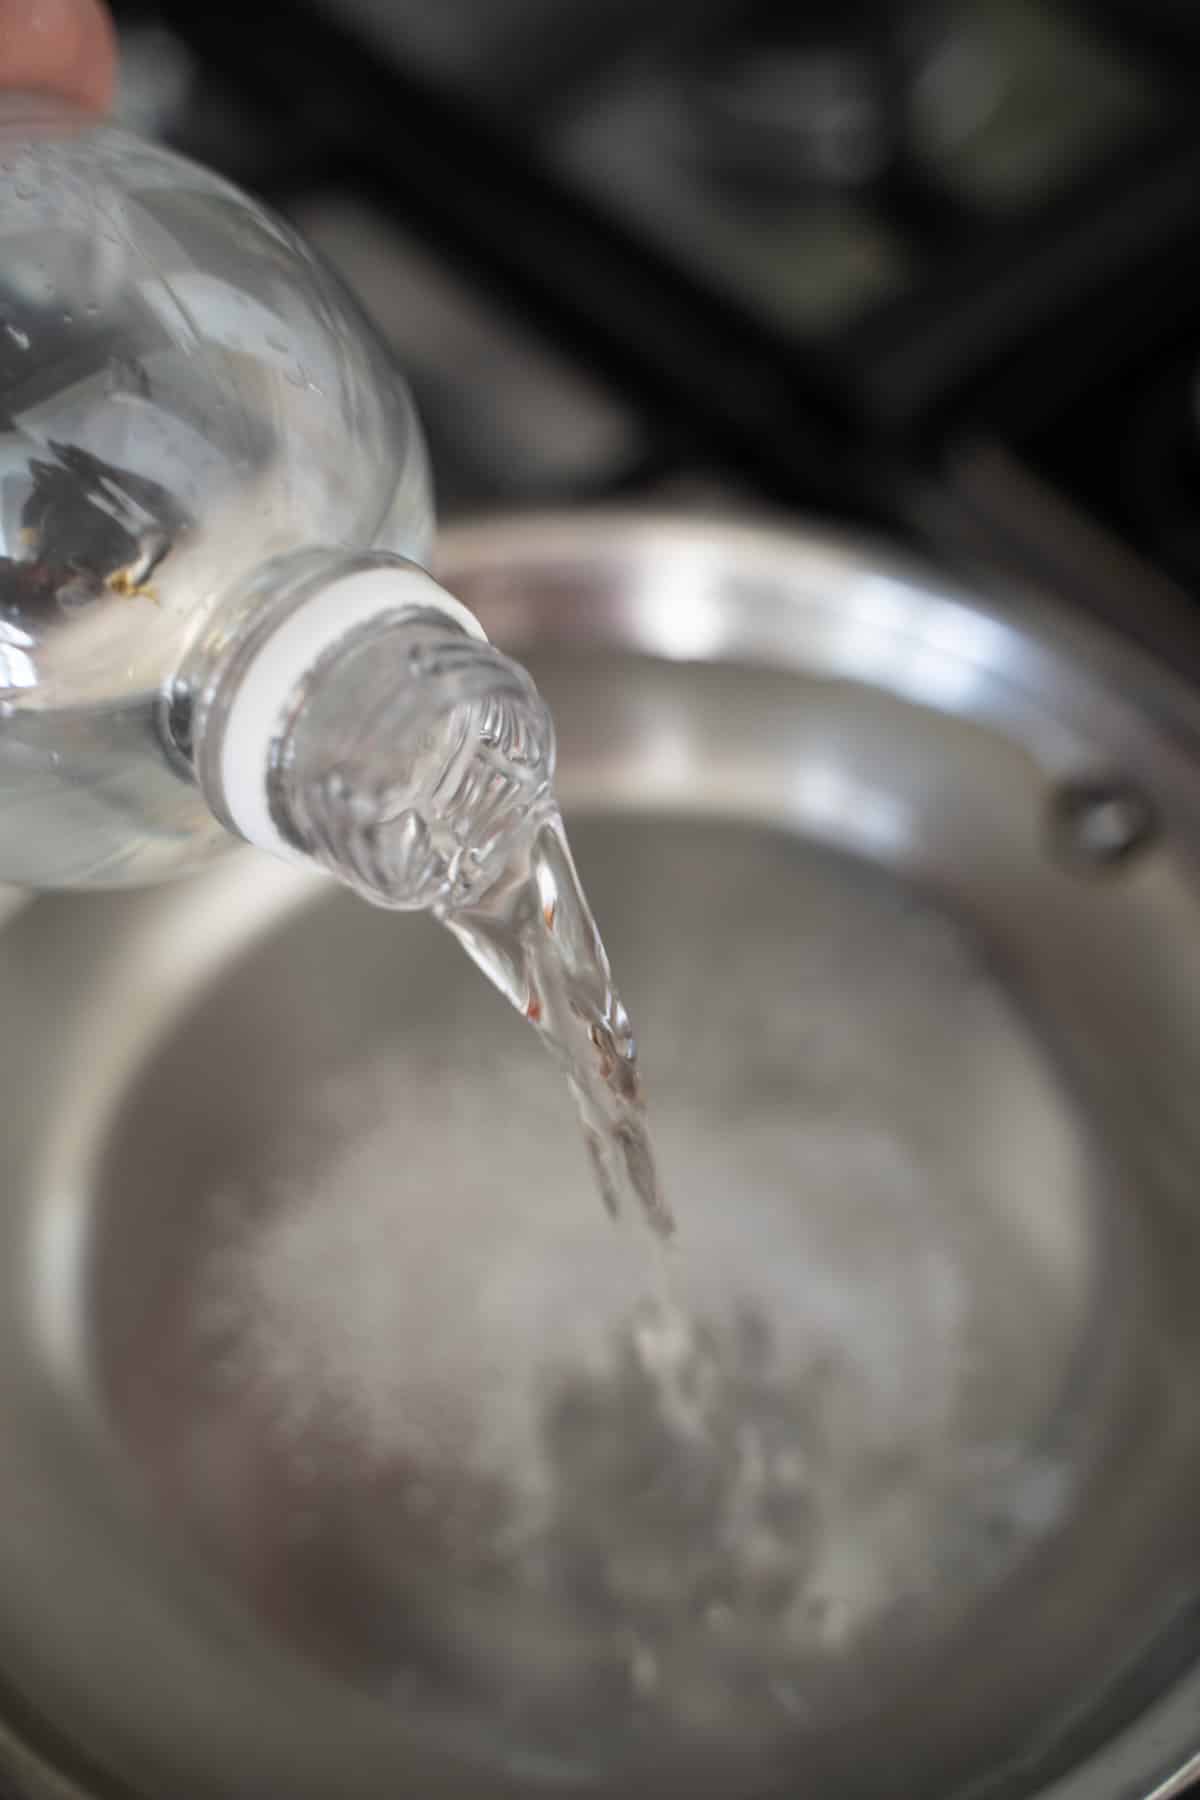 seasoning water in 8 inch skillet with vinegar and salt